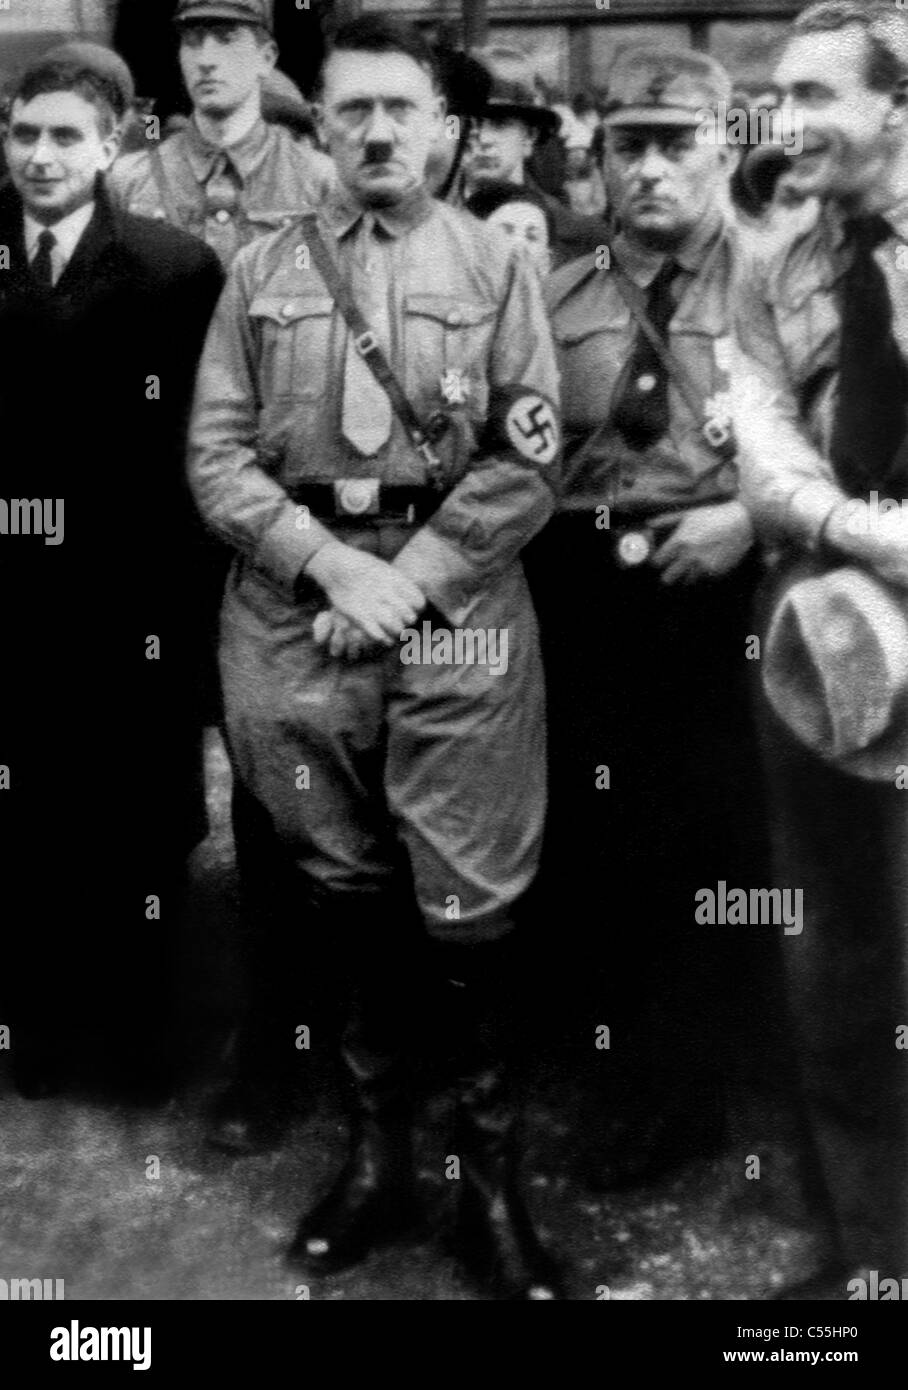 ADOLF HITLER FUHRER OF GERMANY NAZI LEADER 20 September 1938 Stock Photo